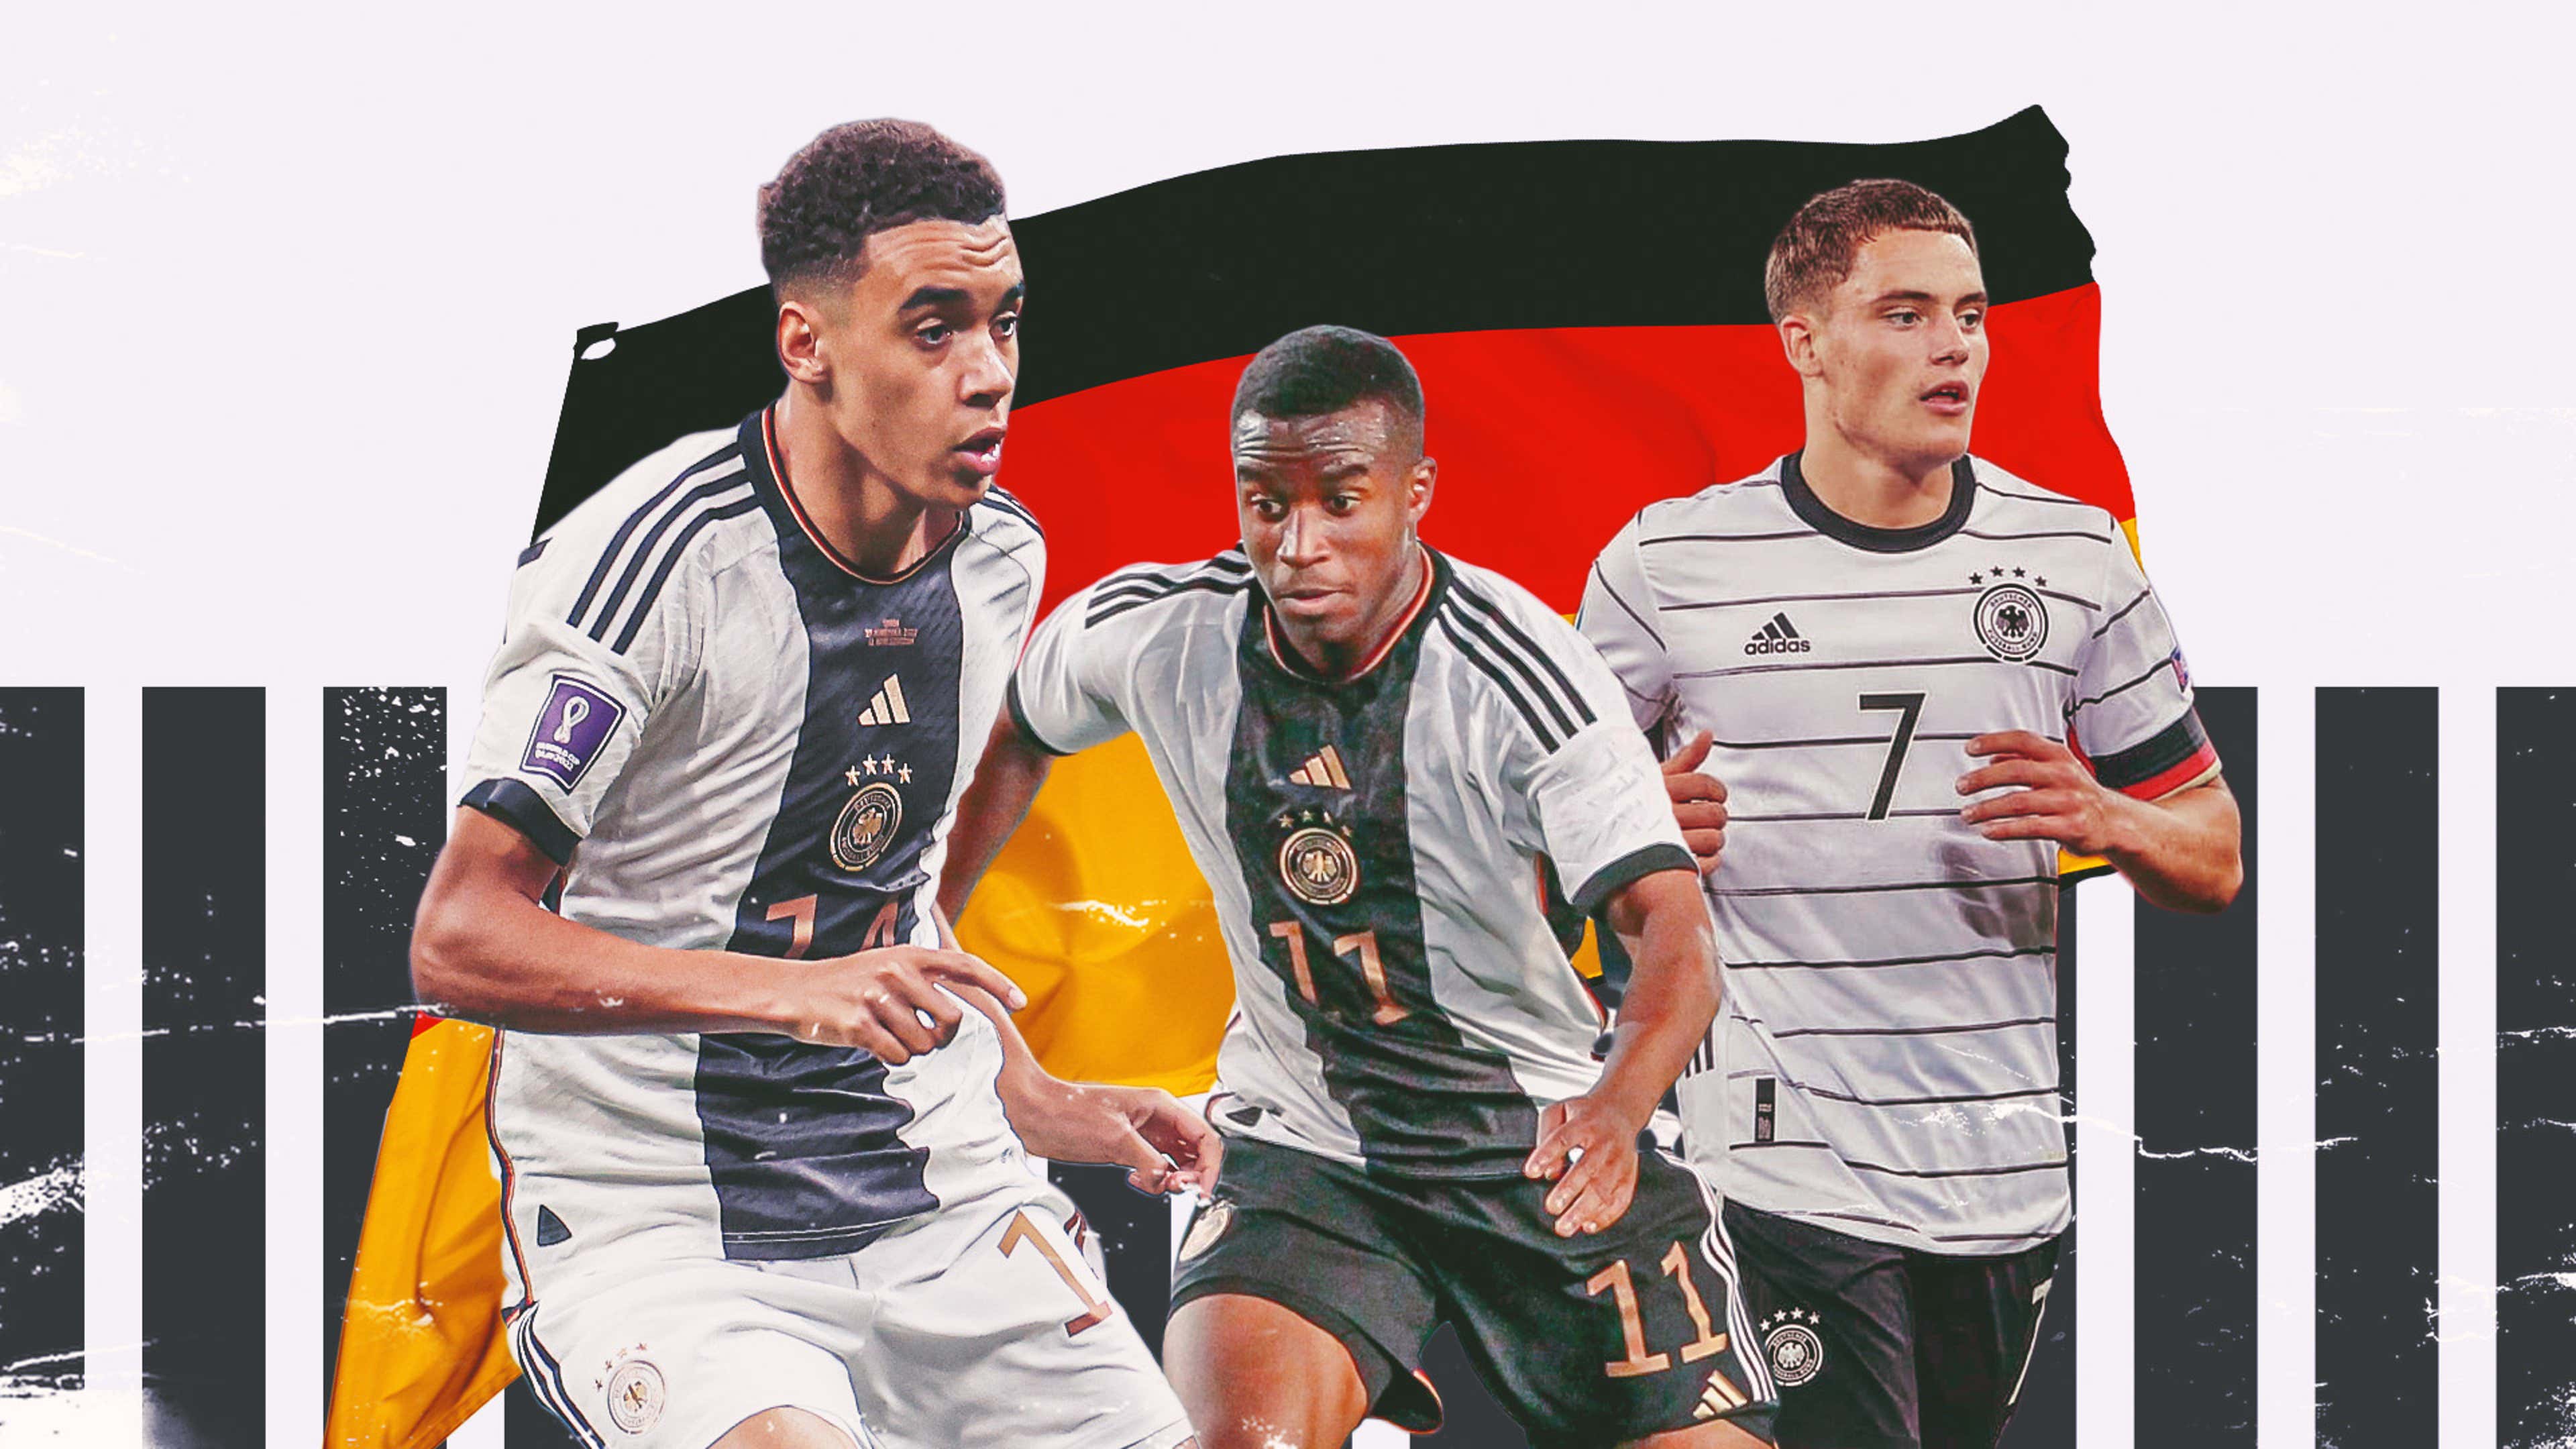 Os melhores jogos online para os fãs de futebol - Alemanha Futebol Clube